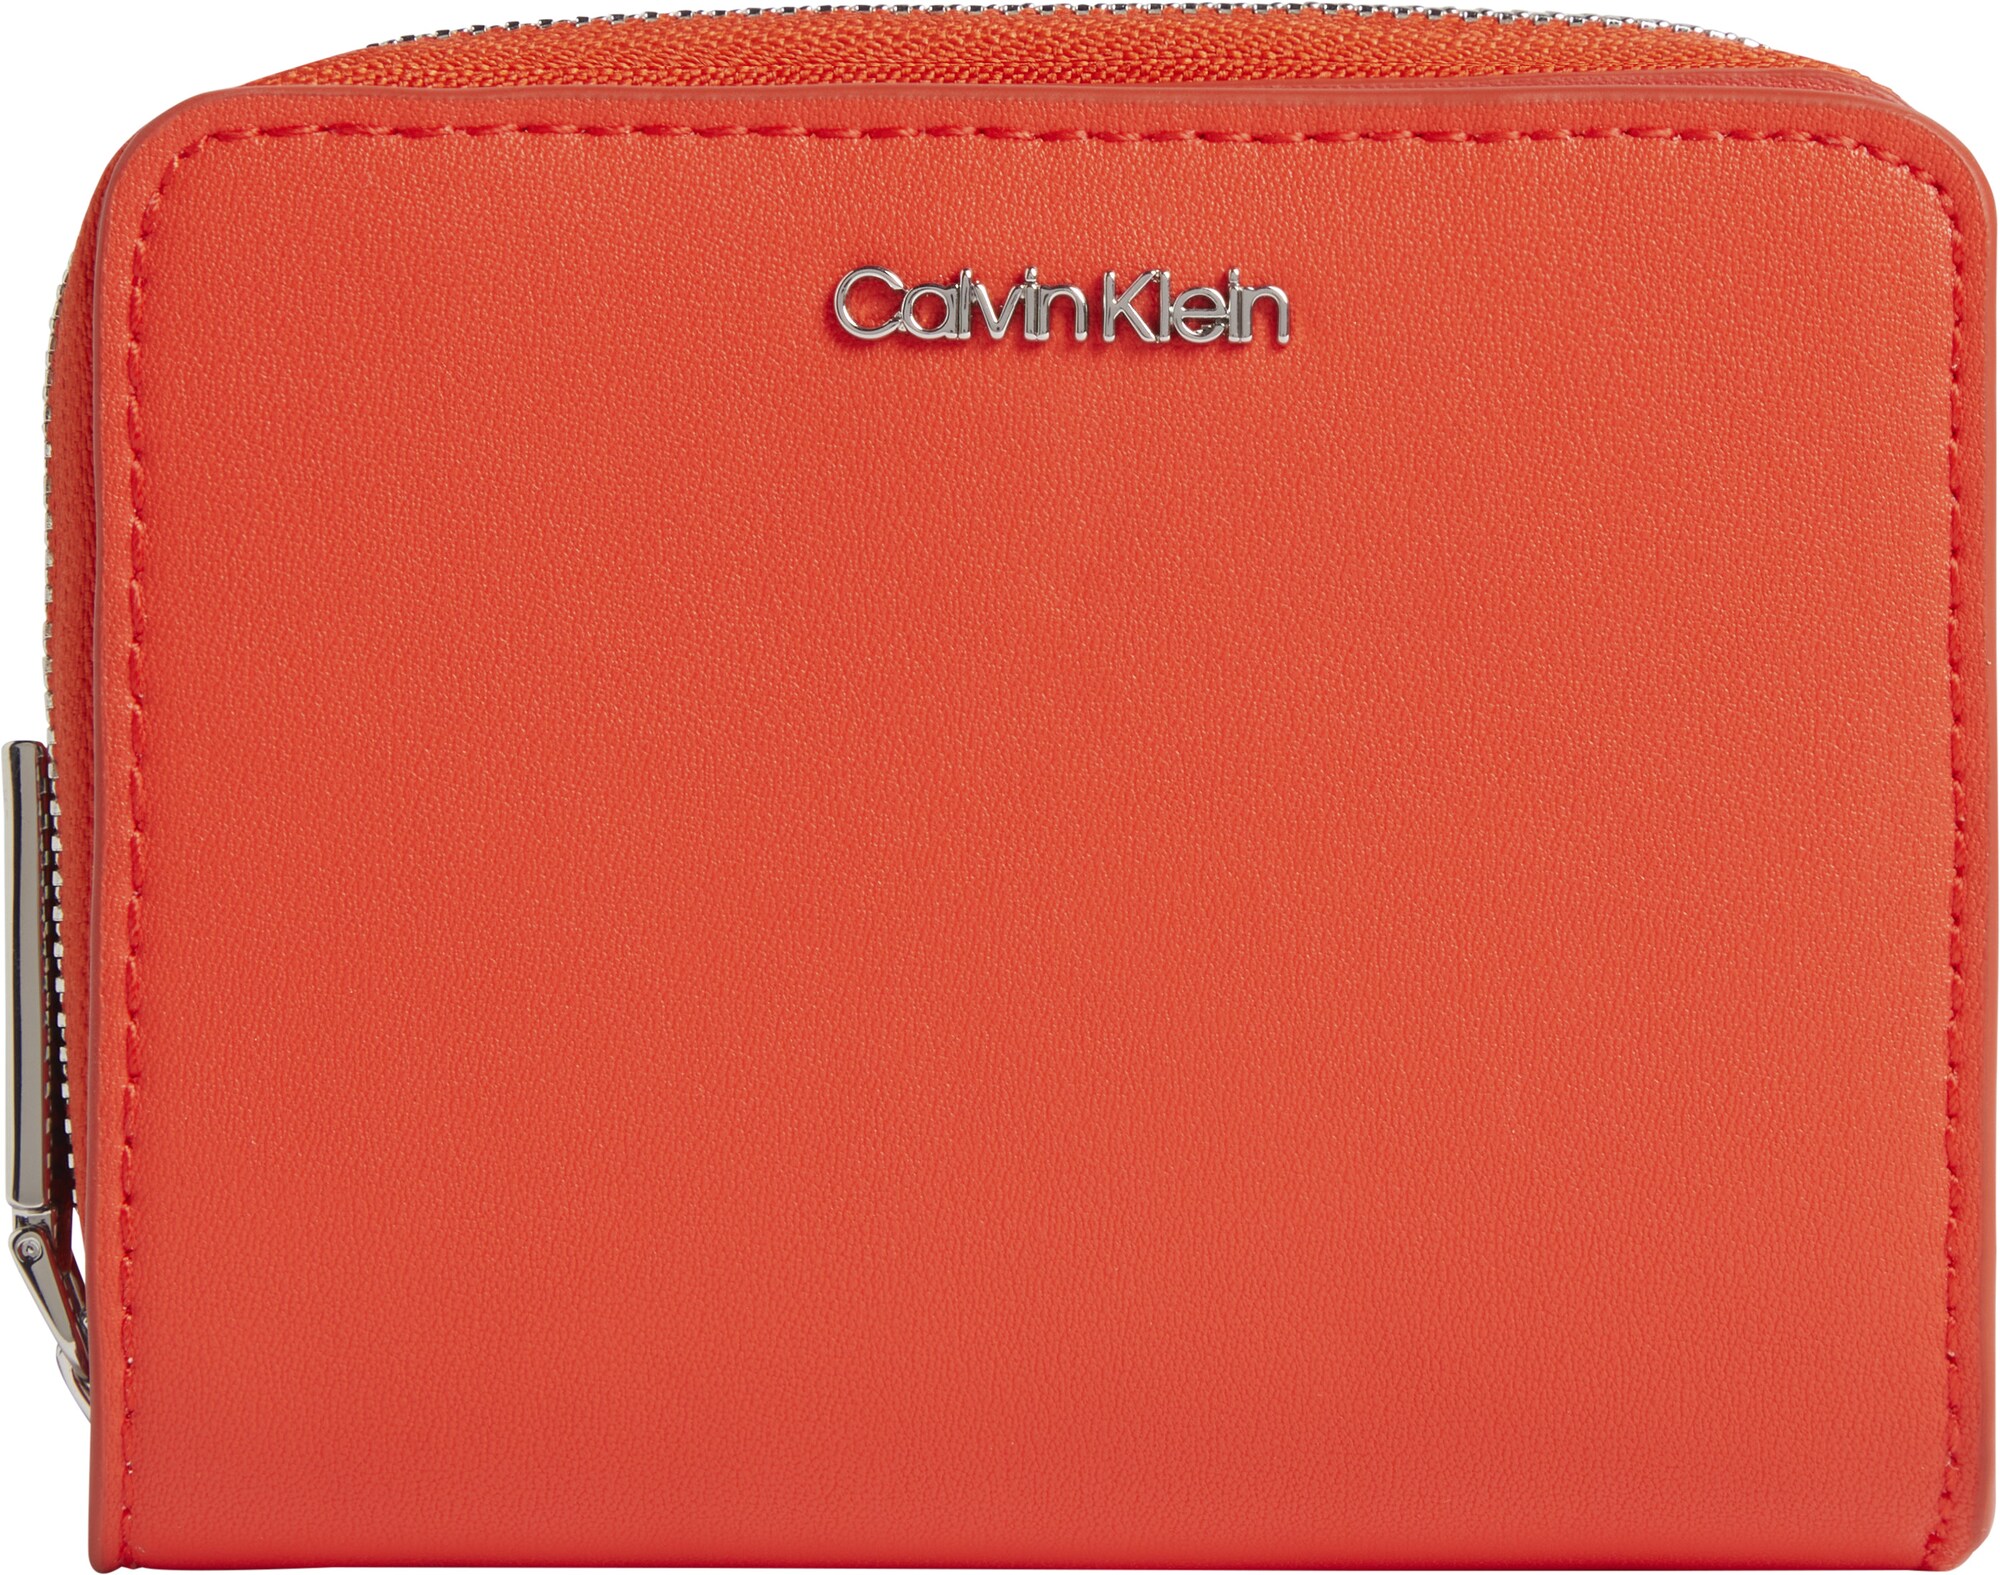 Calvin Klein Portemonnaie orange